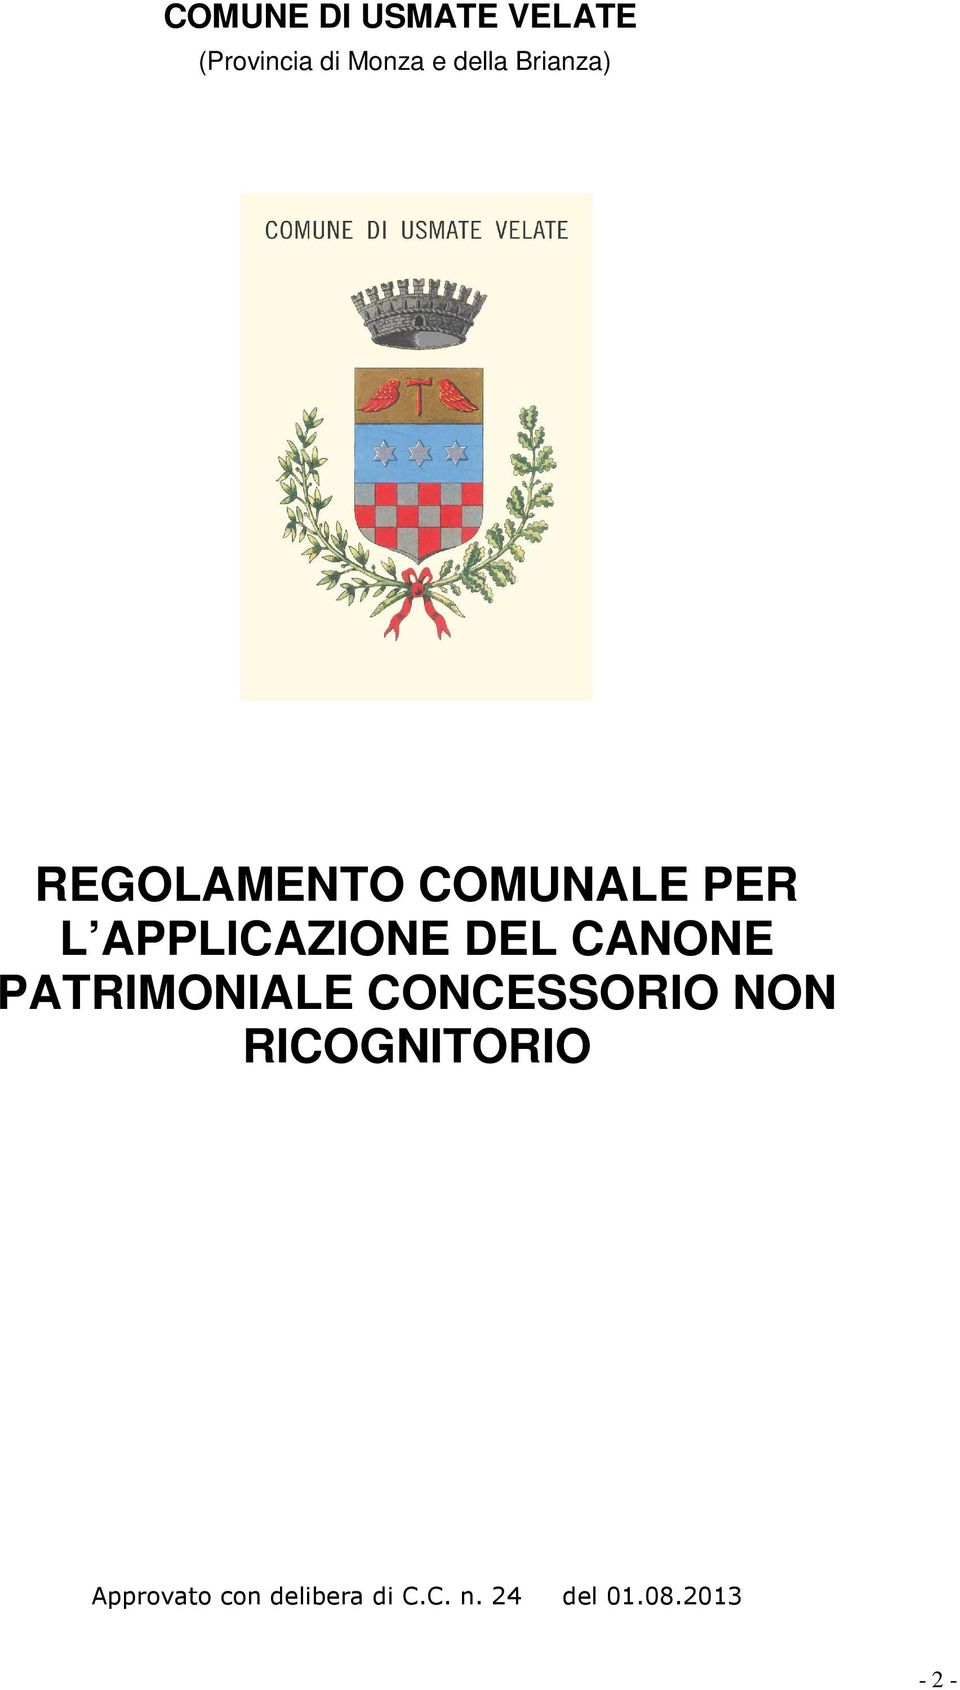 CANONE PATRIMONIALE CONCESSORIO NON RICOGNITORIO